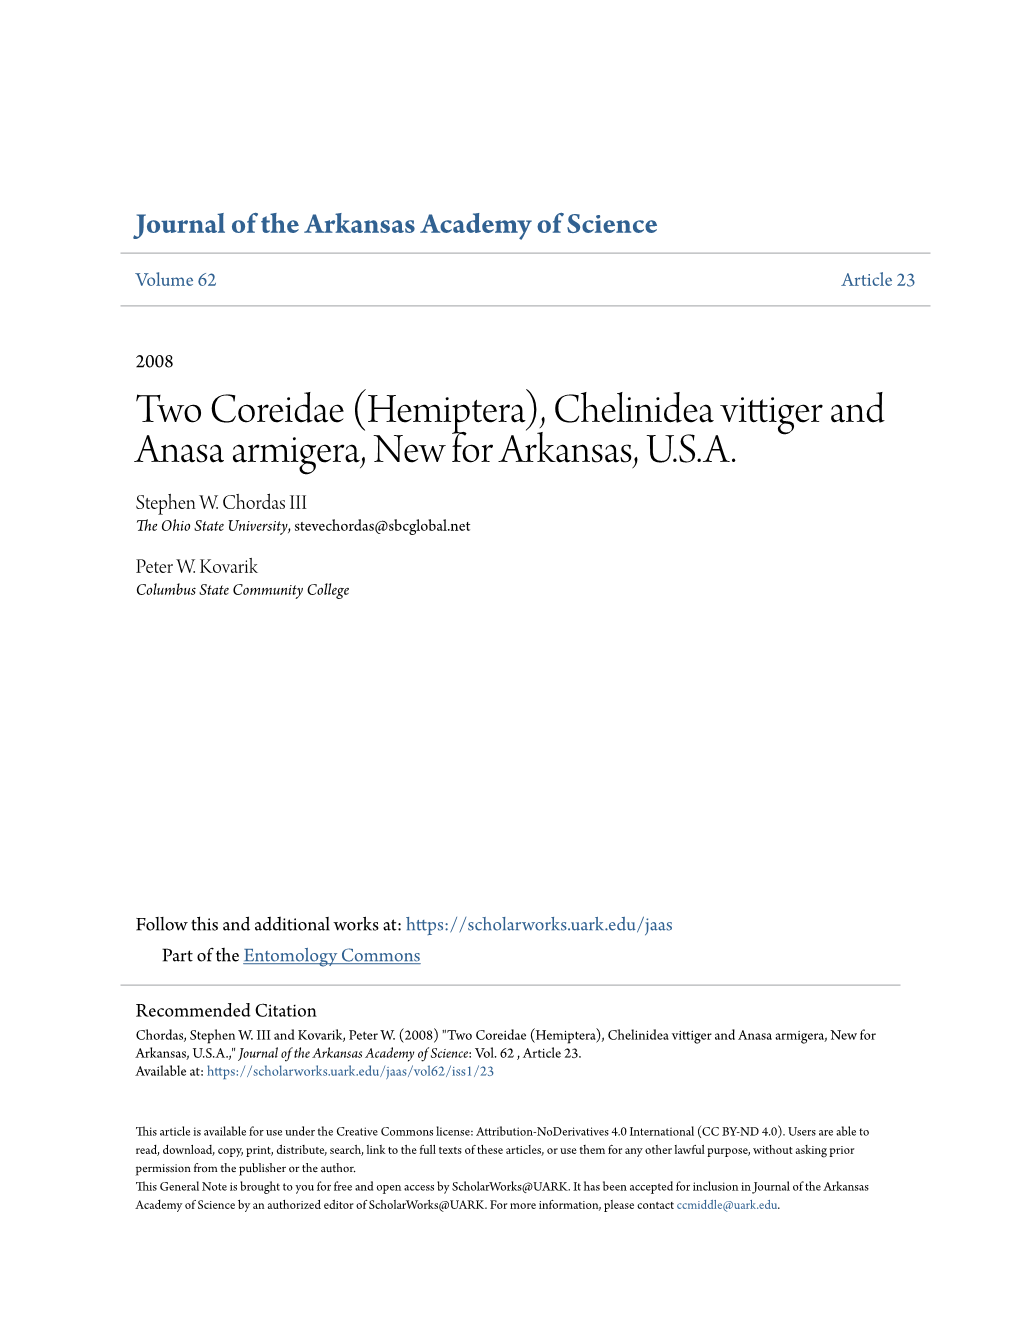 (Hemiptera), Chelinidea Vittiger and Anasa Armigera, New for Arkansas, U.S.A